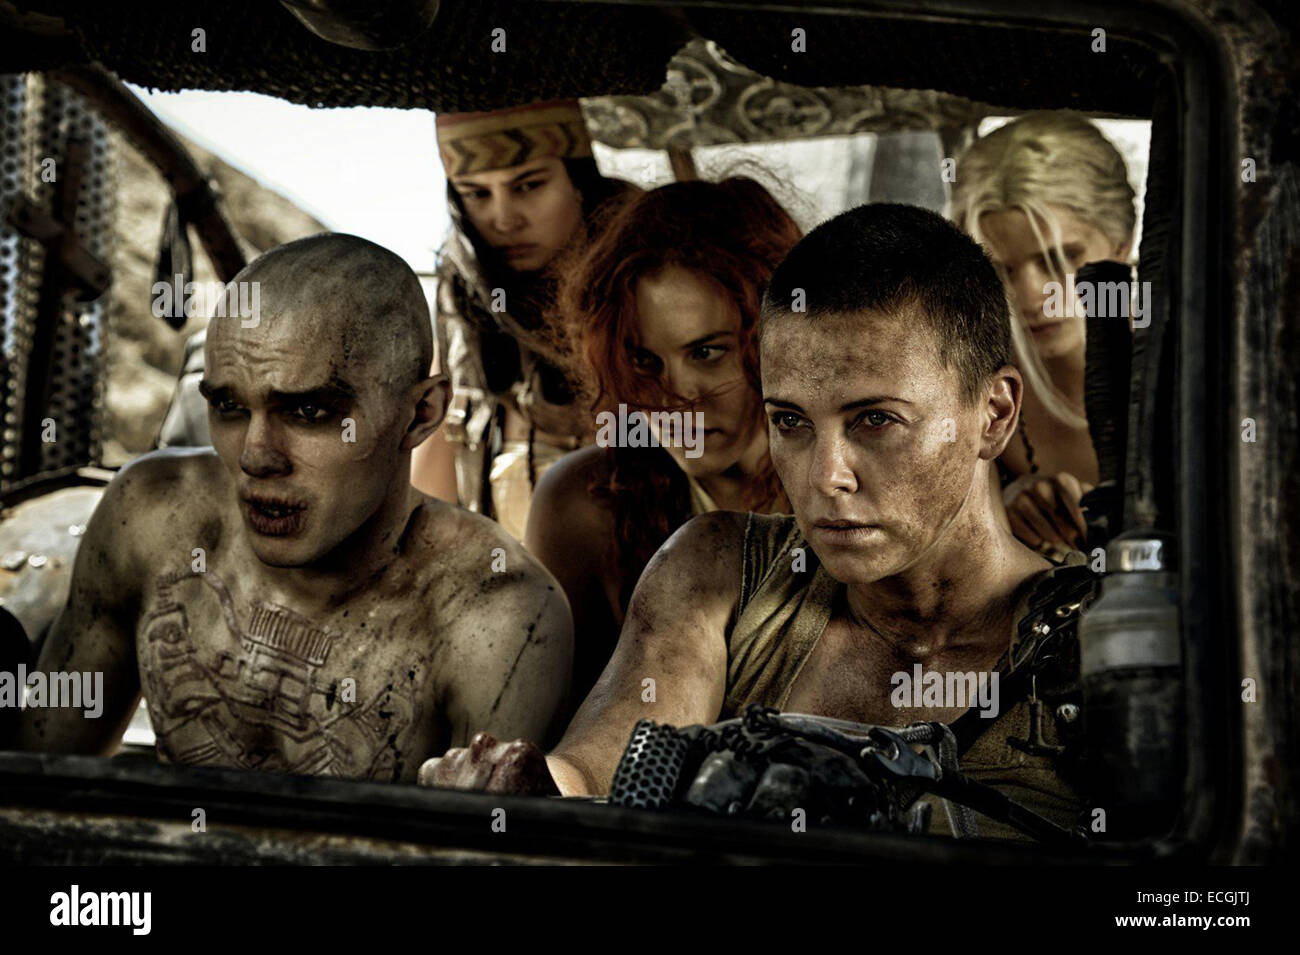 Mad Max: Fury Road ist ein kommenden Post-apokalyptischen Action-Film, Regie, produziert und Co-geschrieben von George Miller und der vierte Film der Millers Mad Max-Reihe. Der erste Film des Franchise in 30 Jahren bietet Fury Road Schauspieler Tom Hardy als Mad Max. Der Film wird voraussichtlich am 15. Mai 2015 veröffentlicht werden. Stockfoto